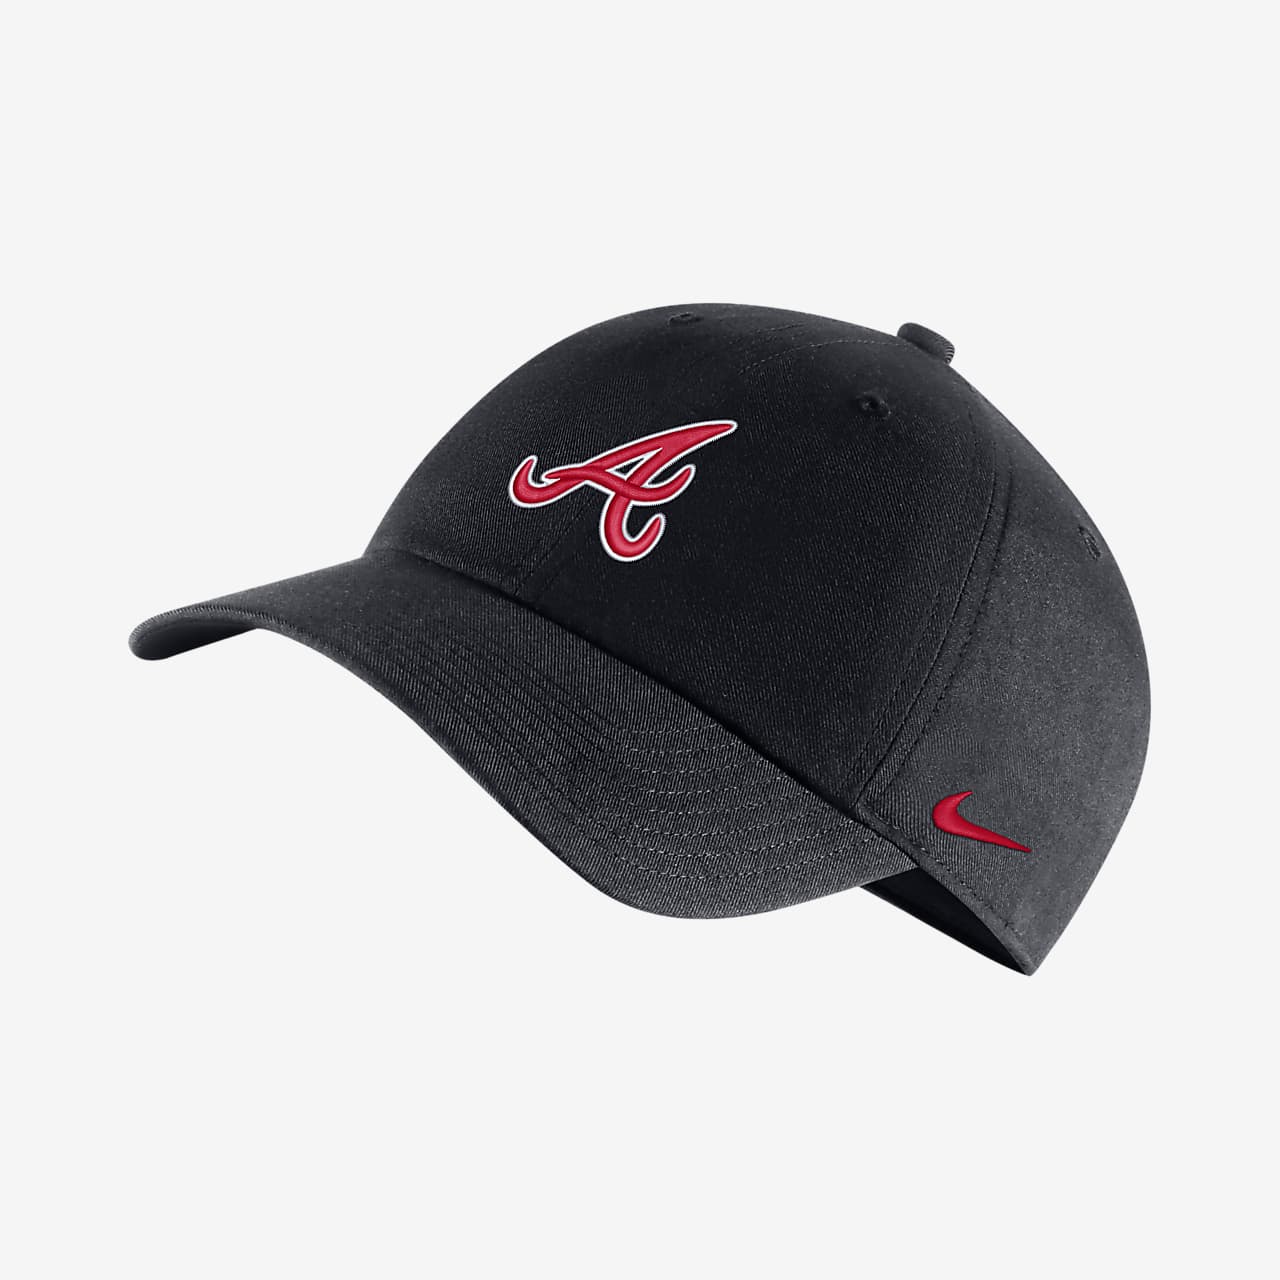 Nike Heritage86 (MLB Braves) Adjustable Cap